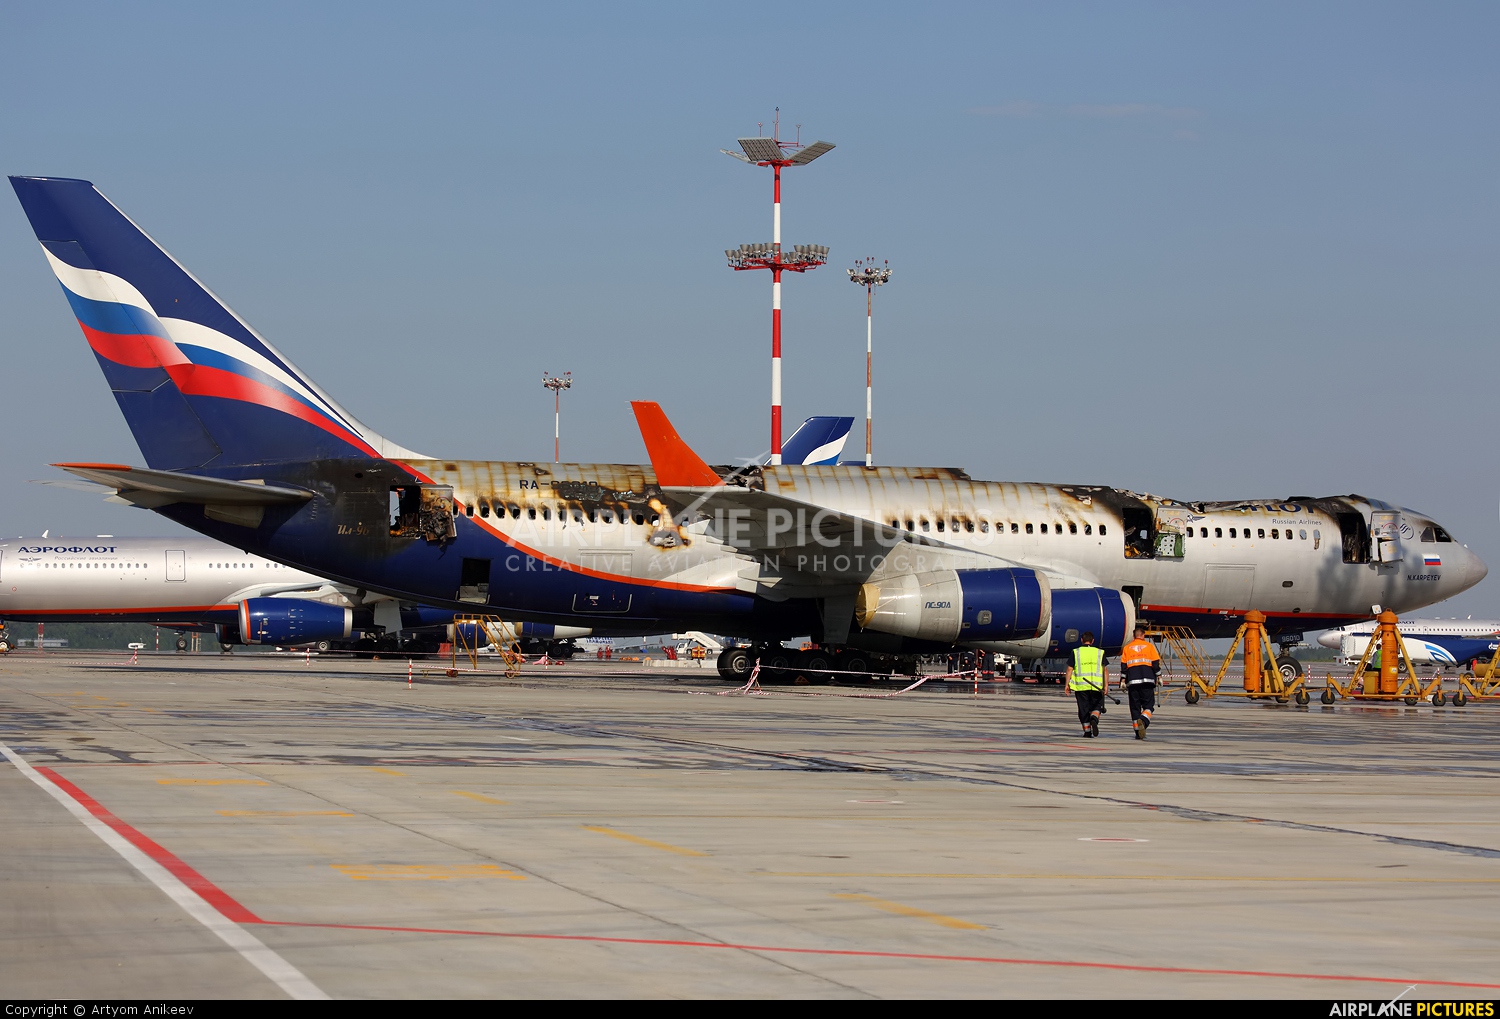 Aeroflot RA-96010 aircraft at Moscow - Sheremetyevo